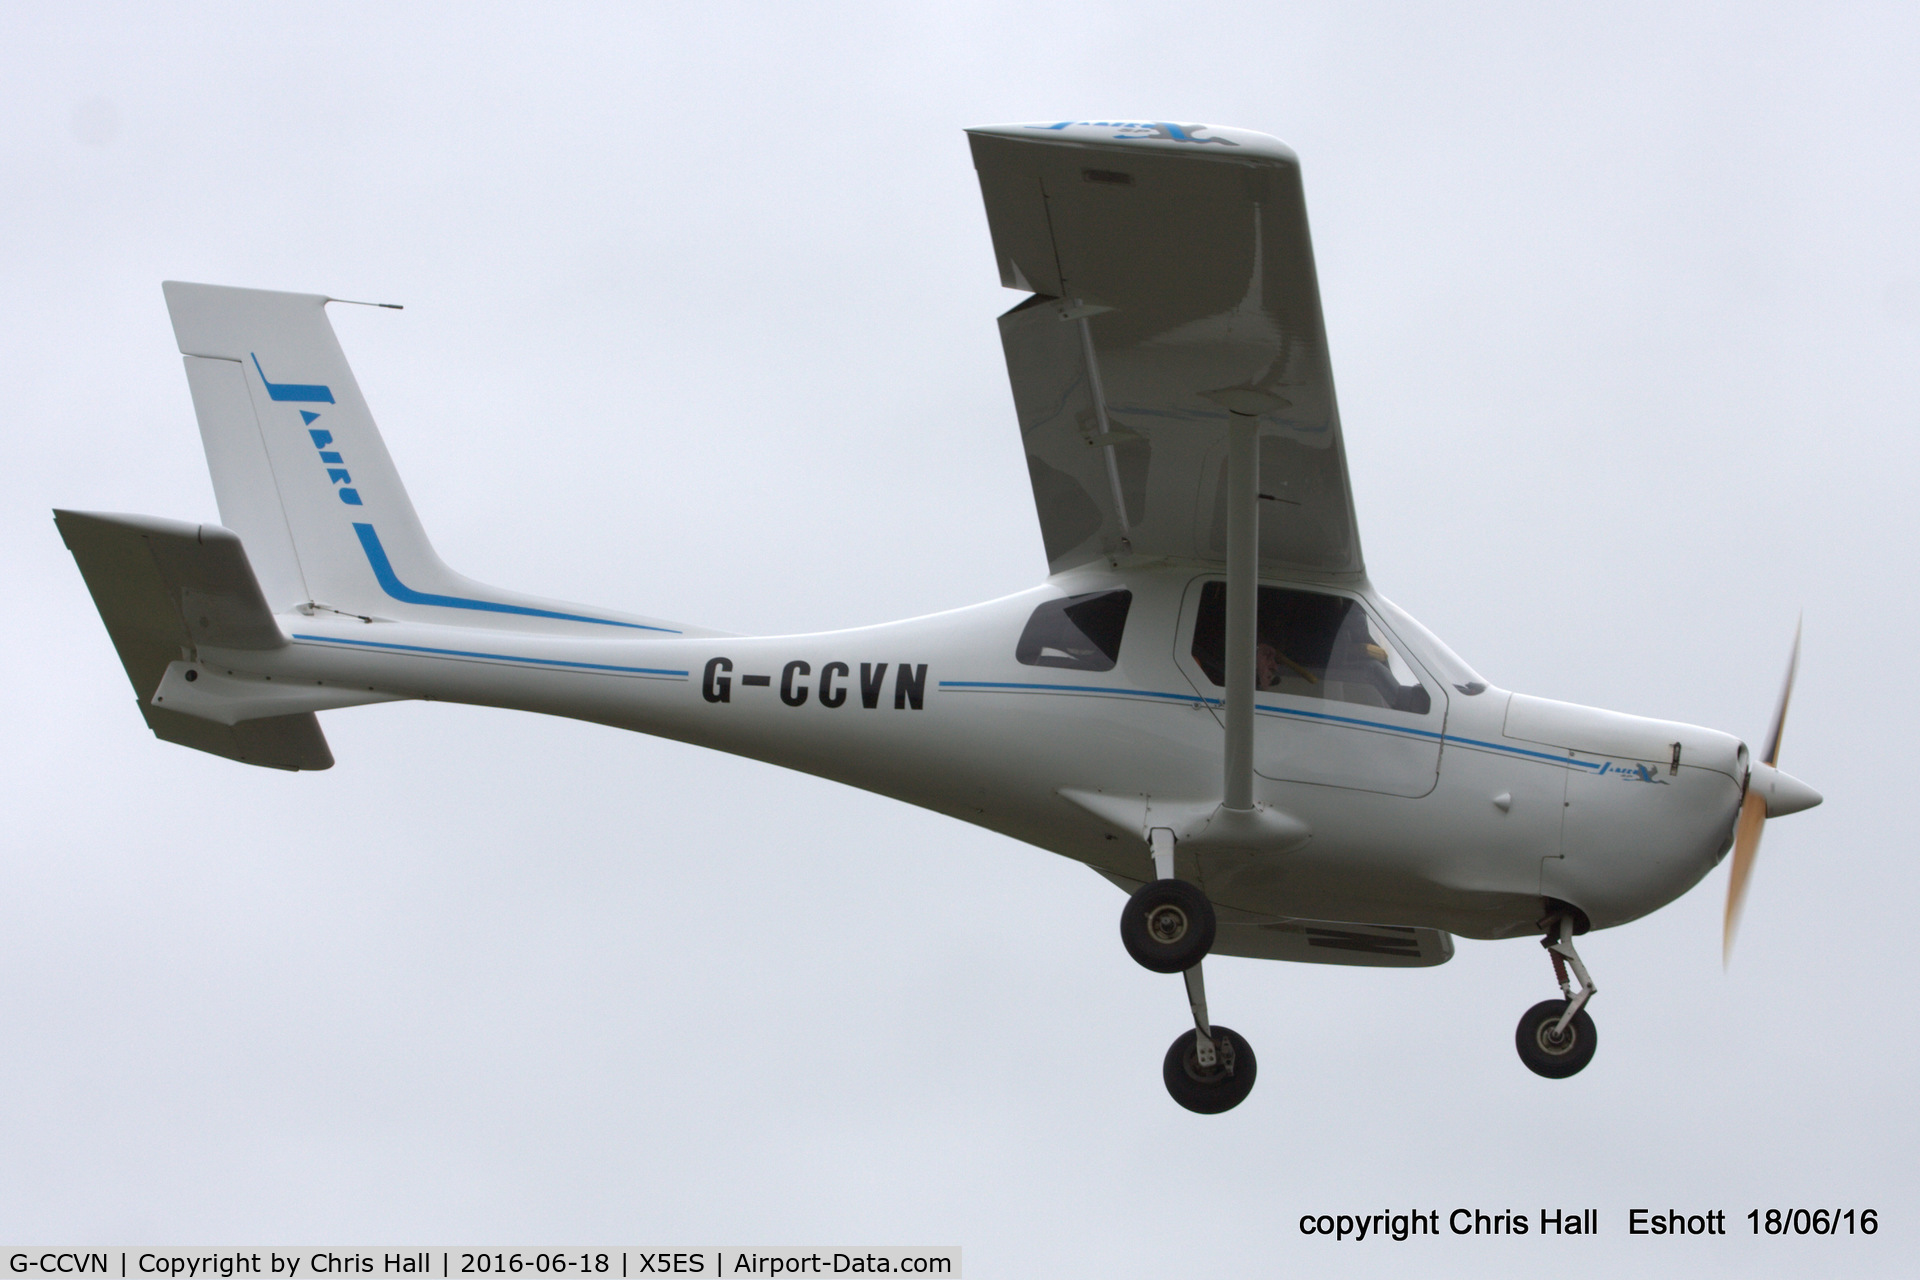 G-CCVN, 2004 Jabiru SP-470 C/N PFA 274B-13677, at the Great North Fly in. Eshott